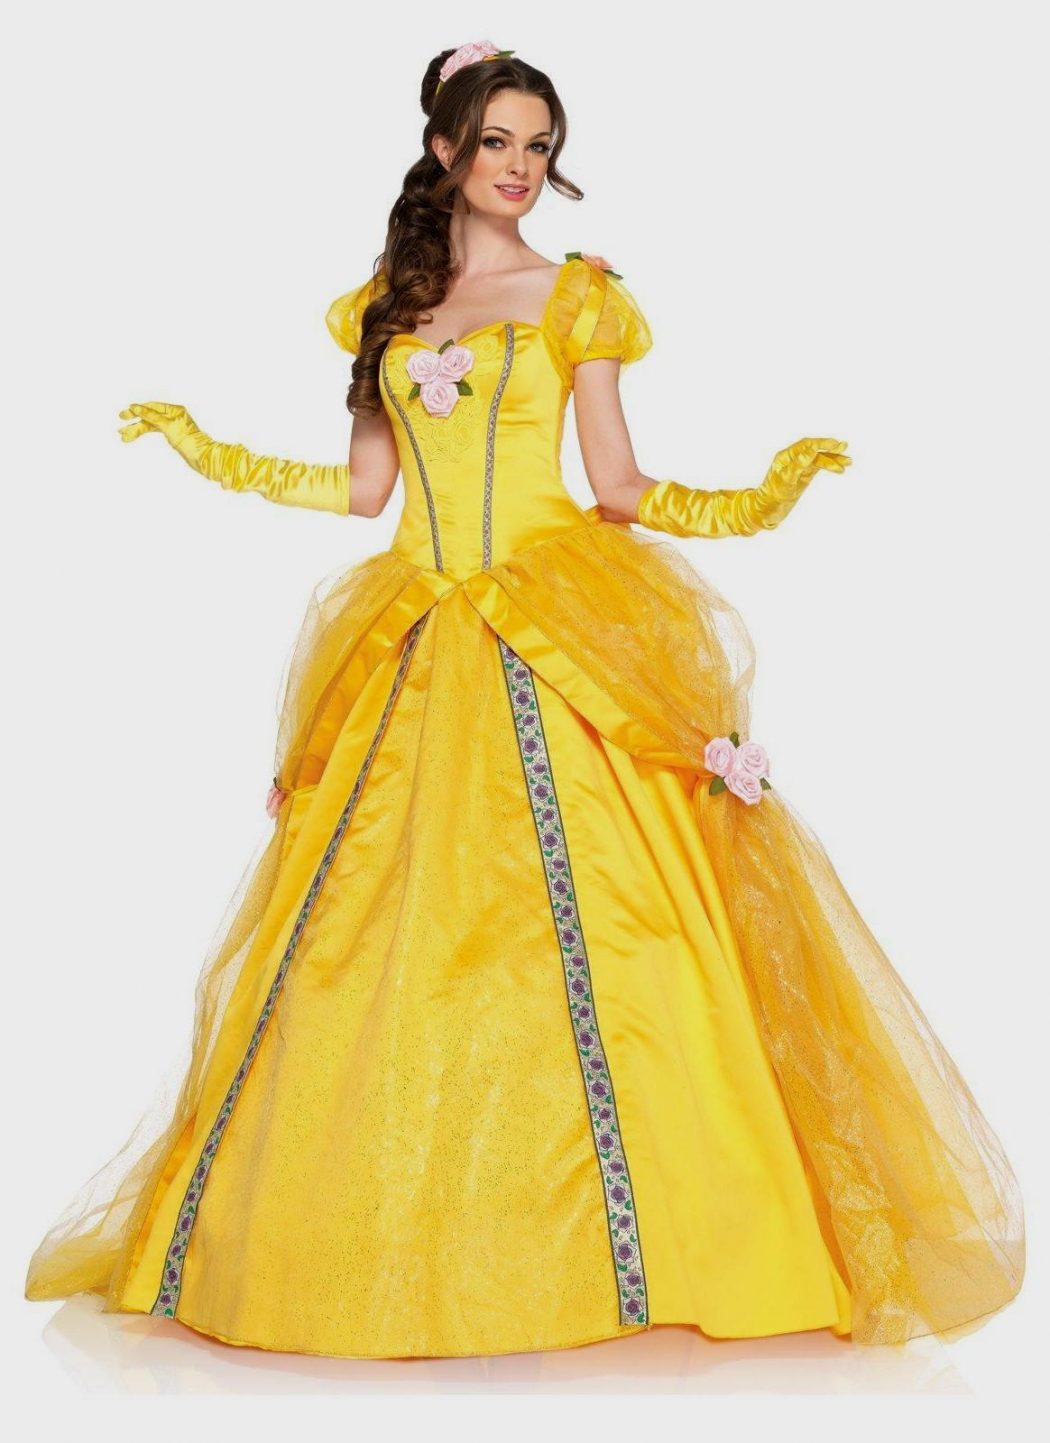 Princess1 Top 10 Teenagers Halloween Costumes Trends - 4